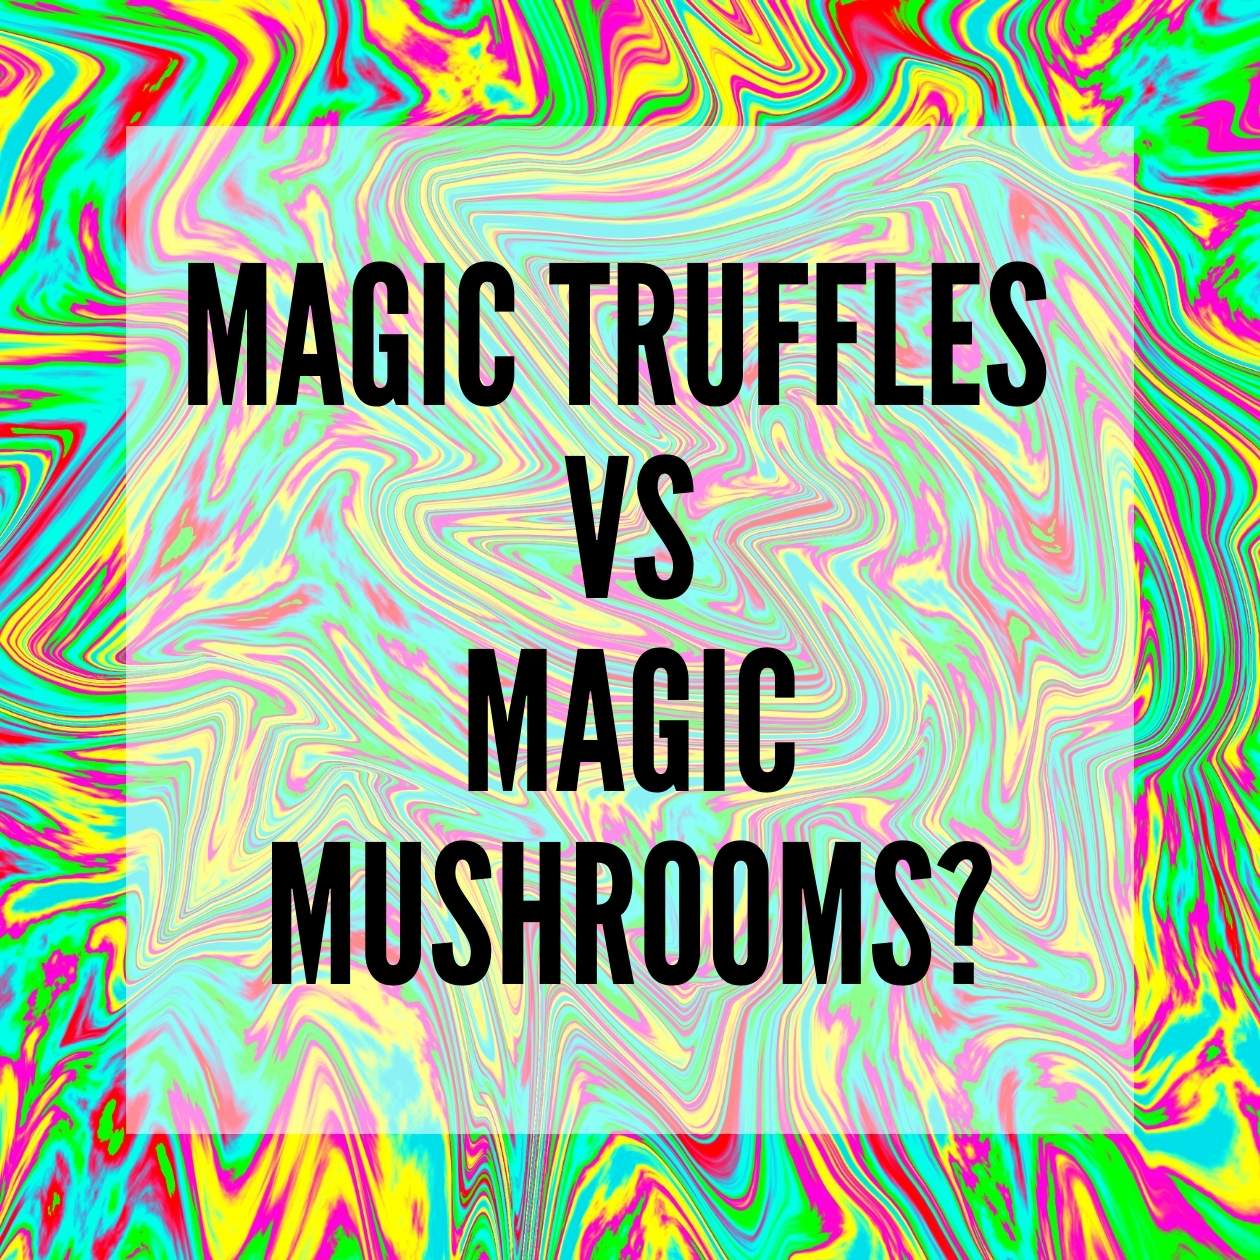 en13 - Magic Truffles vs magic mushrooms